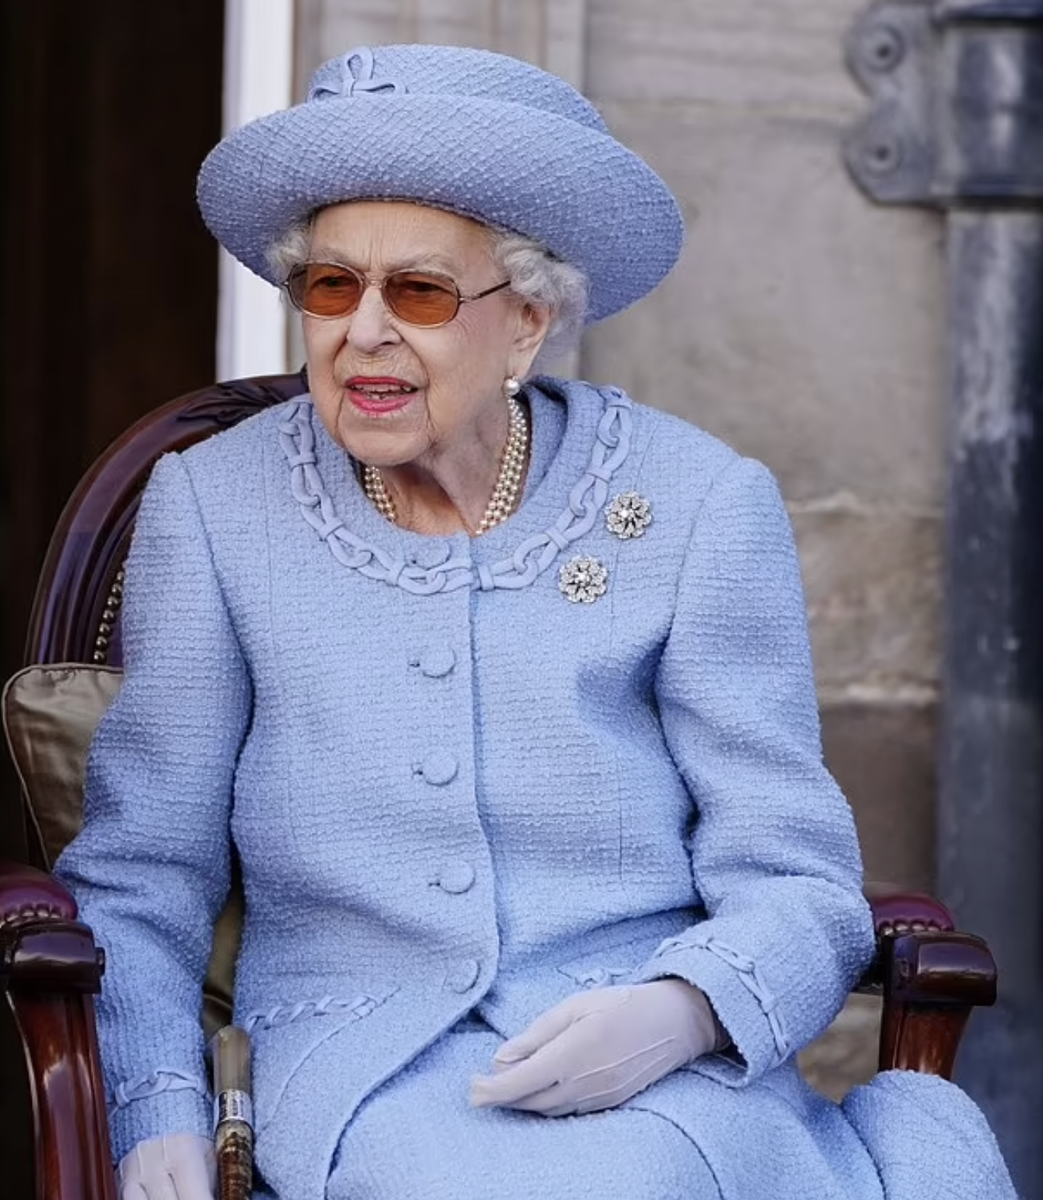  Яркий костюм, шляпка в тон и рука в перчатке – такой мы помним королеву Елизавету II.-38